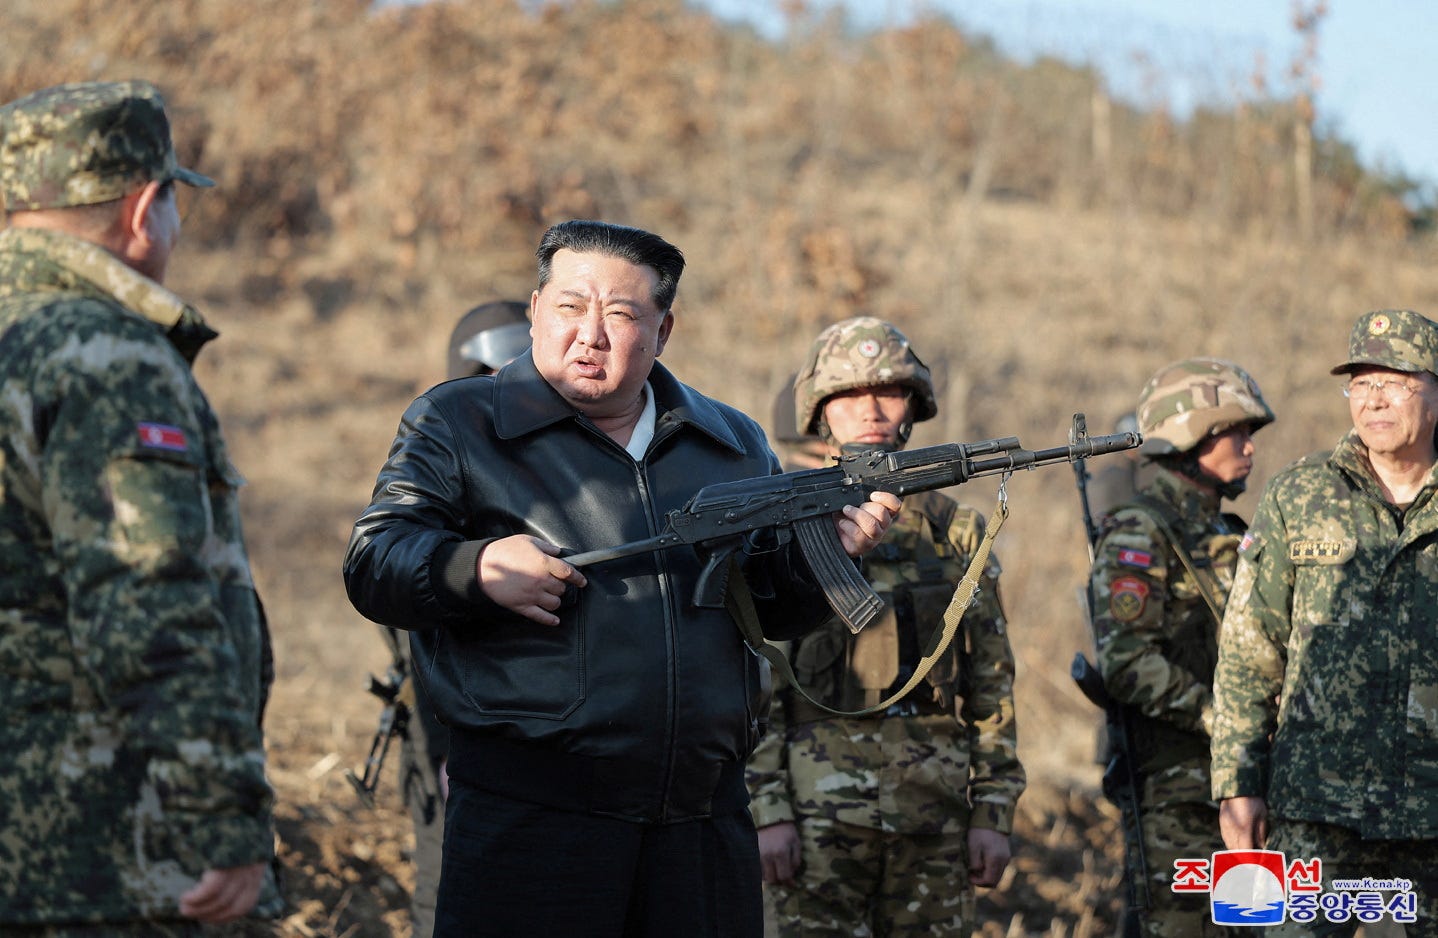 Der nordkoreanische Führer Kim Jong Un hält eine Schusswaffe in der Hand, umgeben von Militärangehörigen